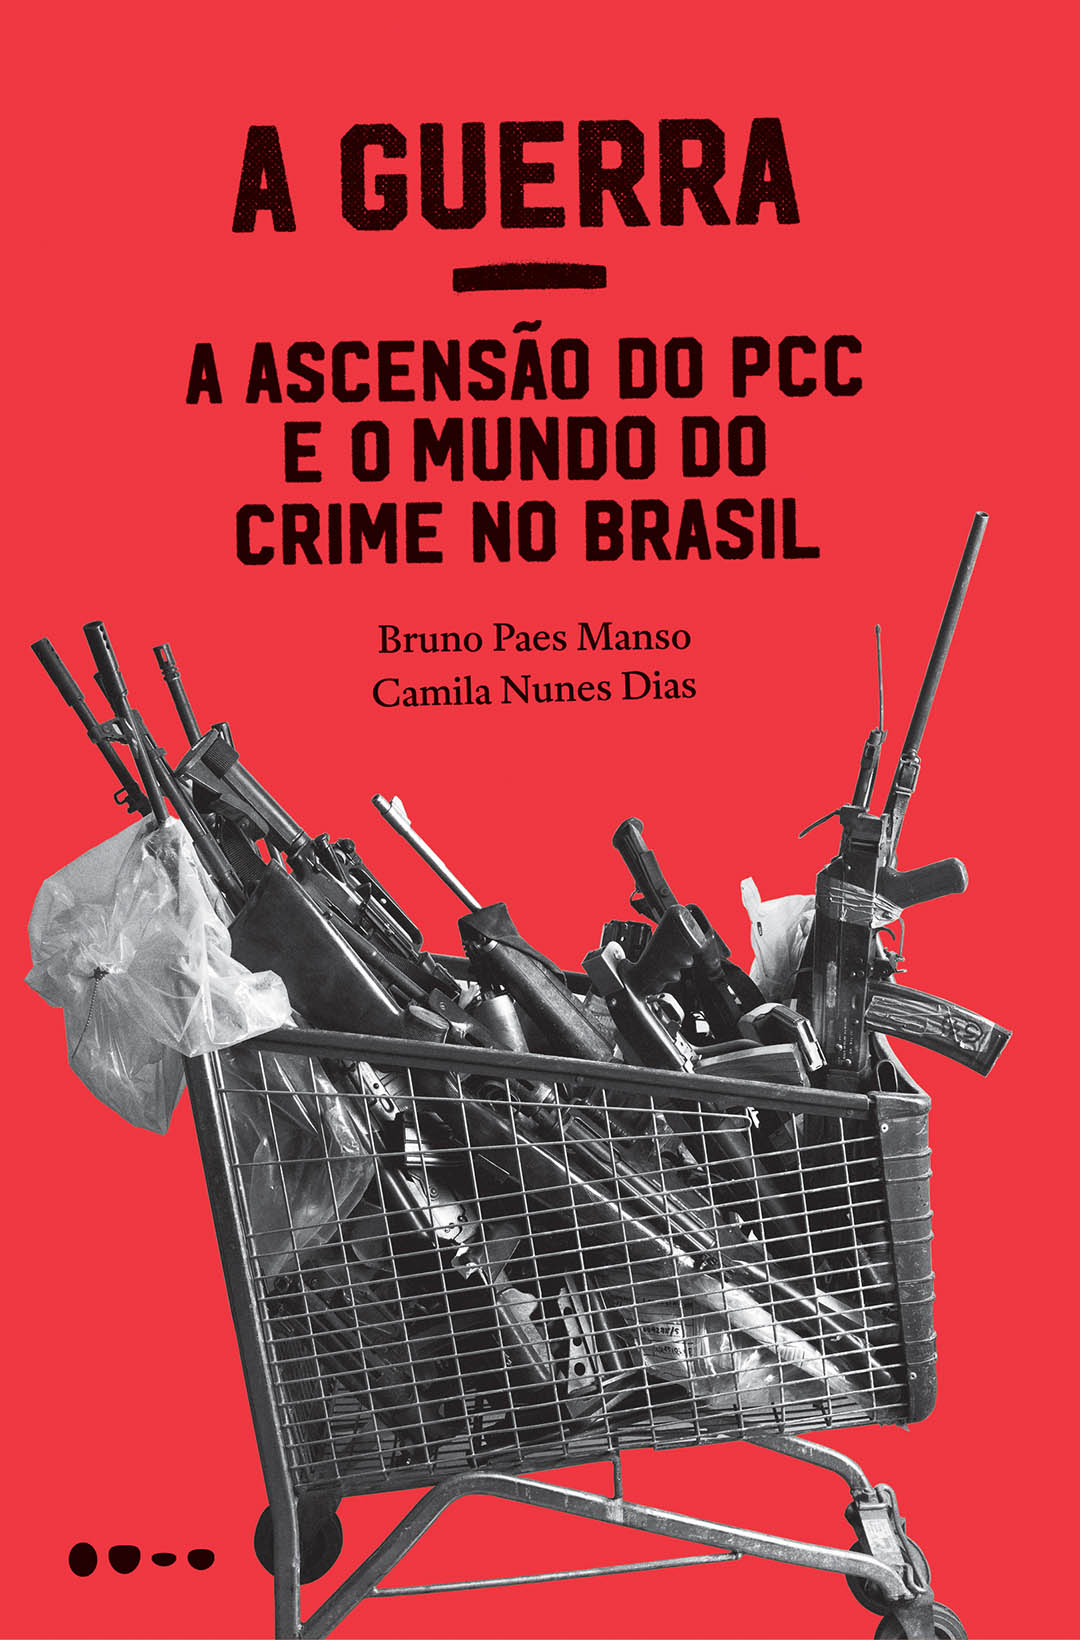 A Guerra - A Ascensão do PCC e o Mundo do Crime no Brasil - Bruno Paes Manso, Camila Nunes Dias